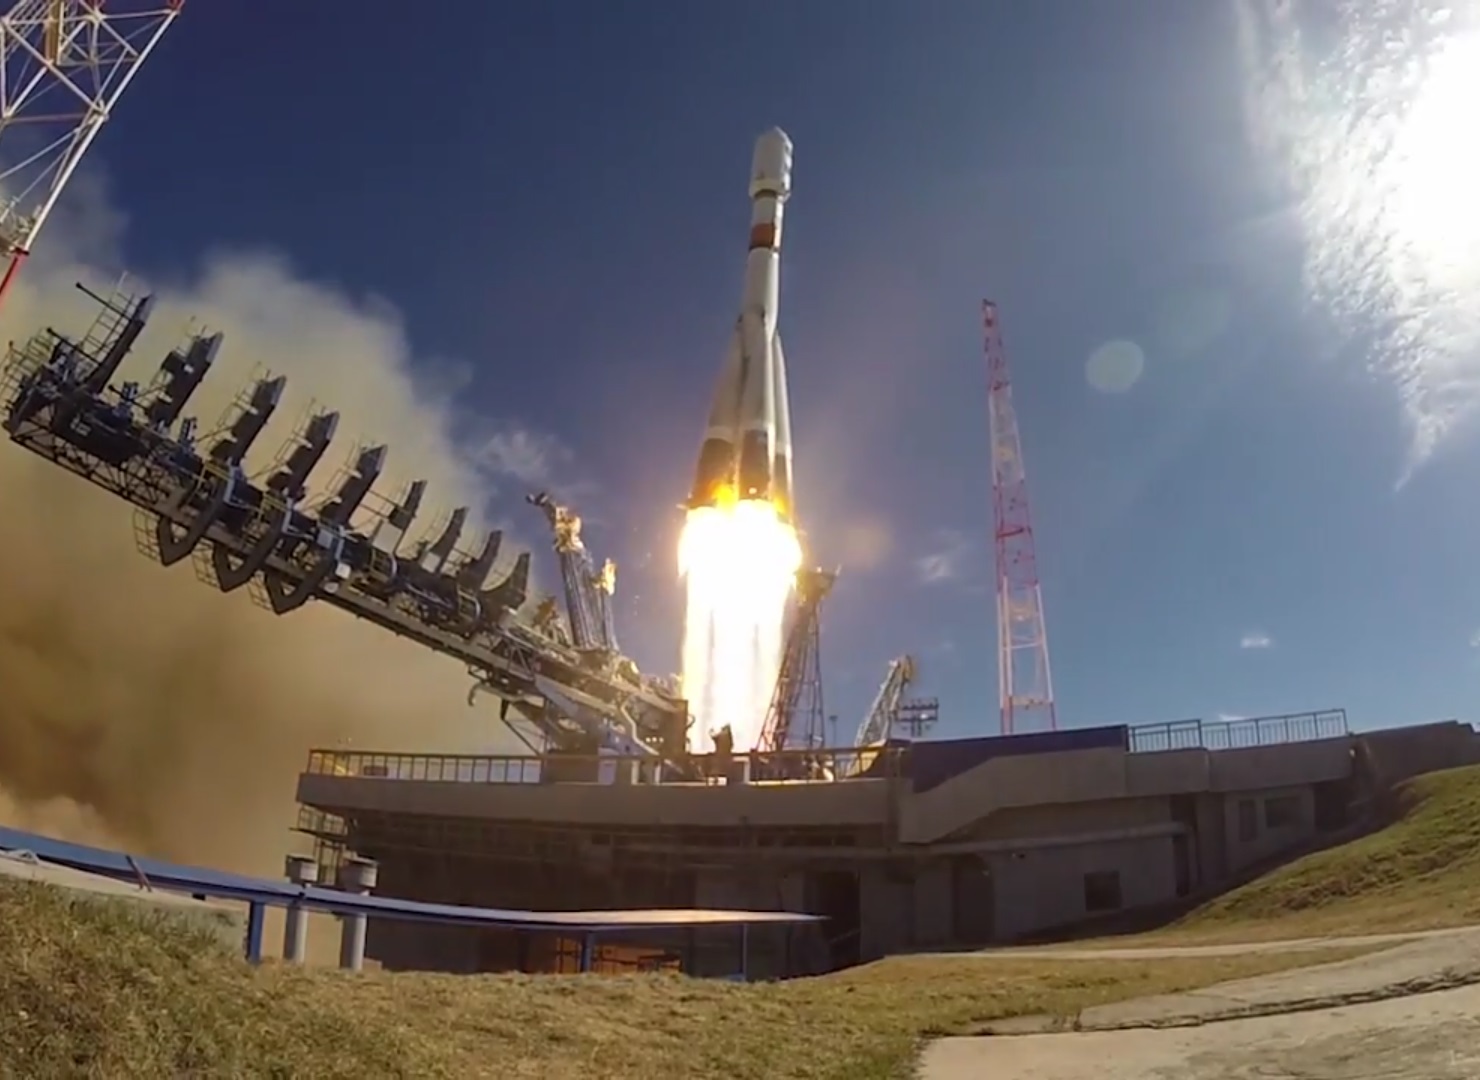 Οι Ρώσοι κυριαρχούν και στο έξω διάστημα -Νέοι δορυφόροι σε τροχιά (βίντεο)